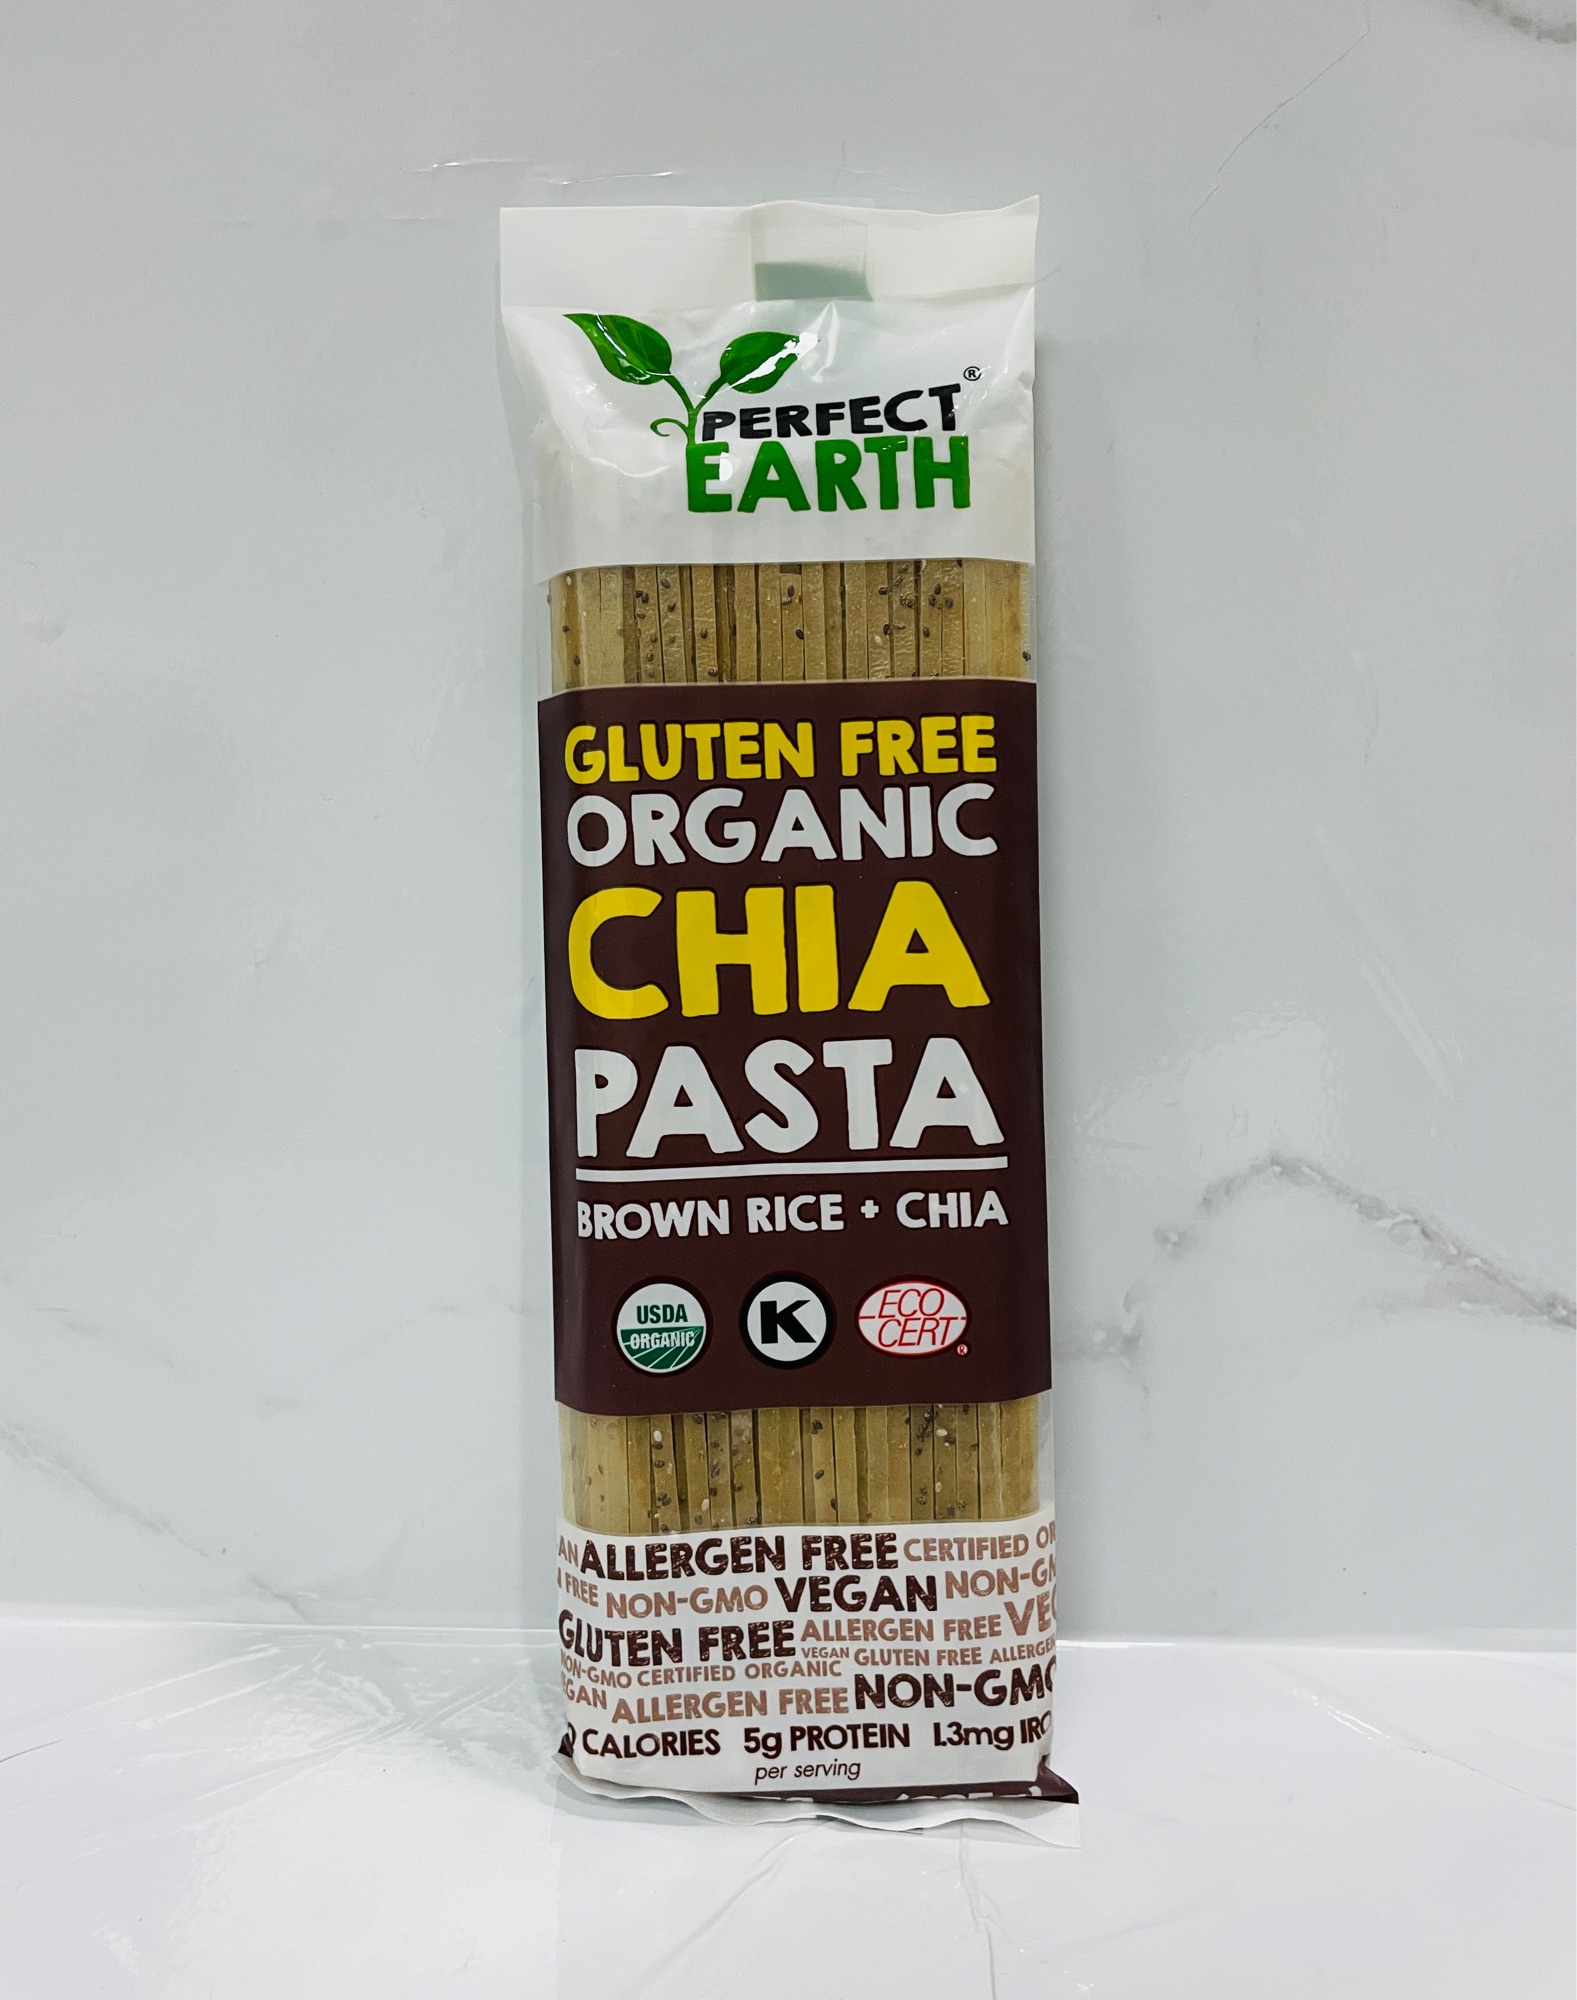 Gluten Free Organic Chia Pasta Brown Rice+Chia เส้นพาสต้าข้าวกล้องอินทรีย์ผสมเมล็ดเจีย 225g